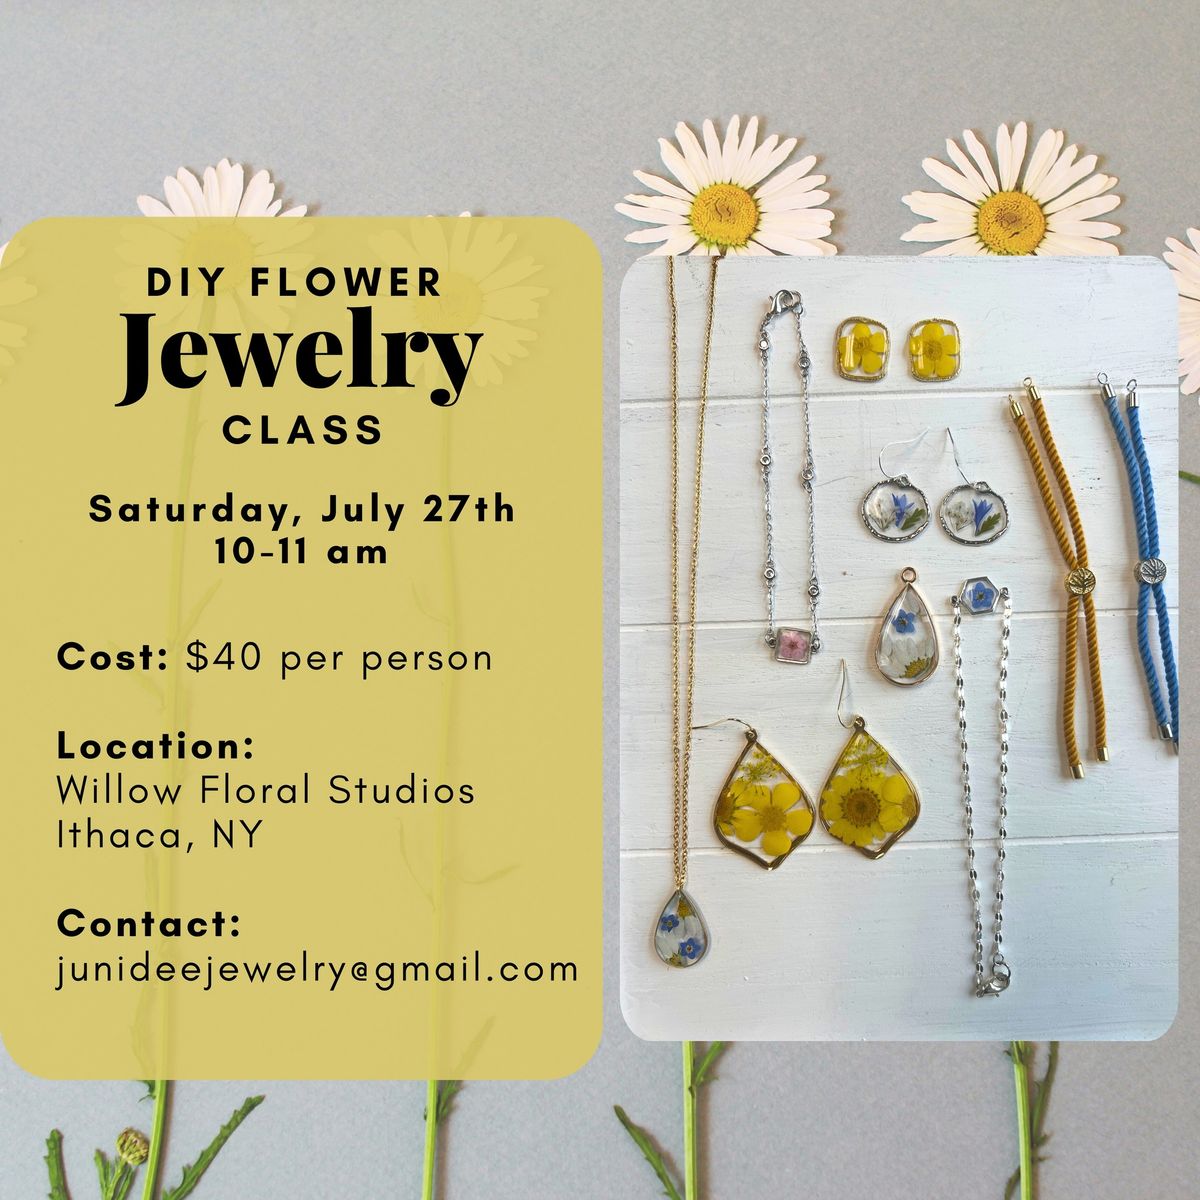 DIY Flower Jewelry Class